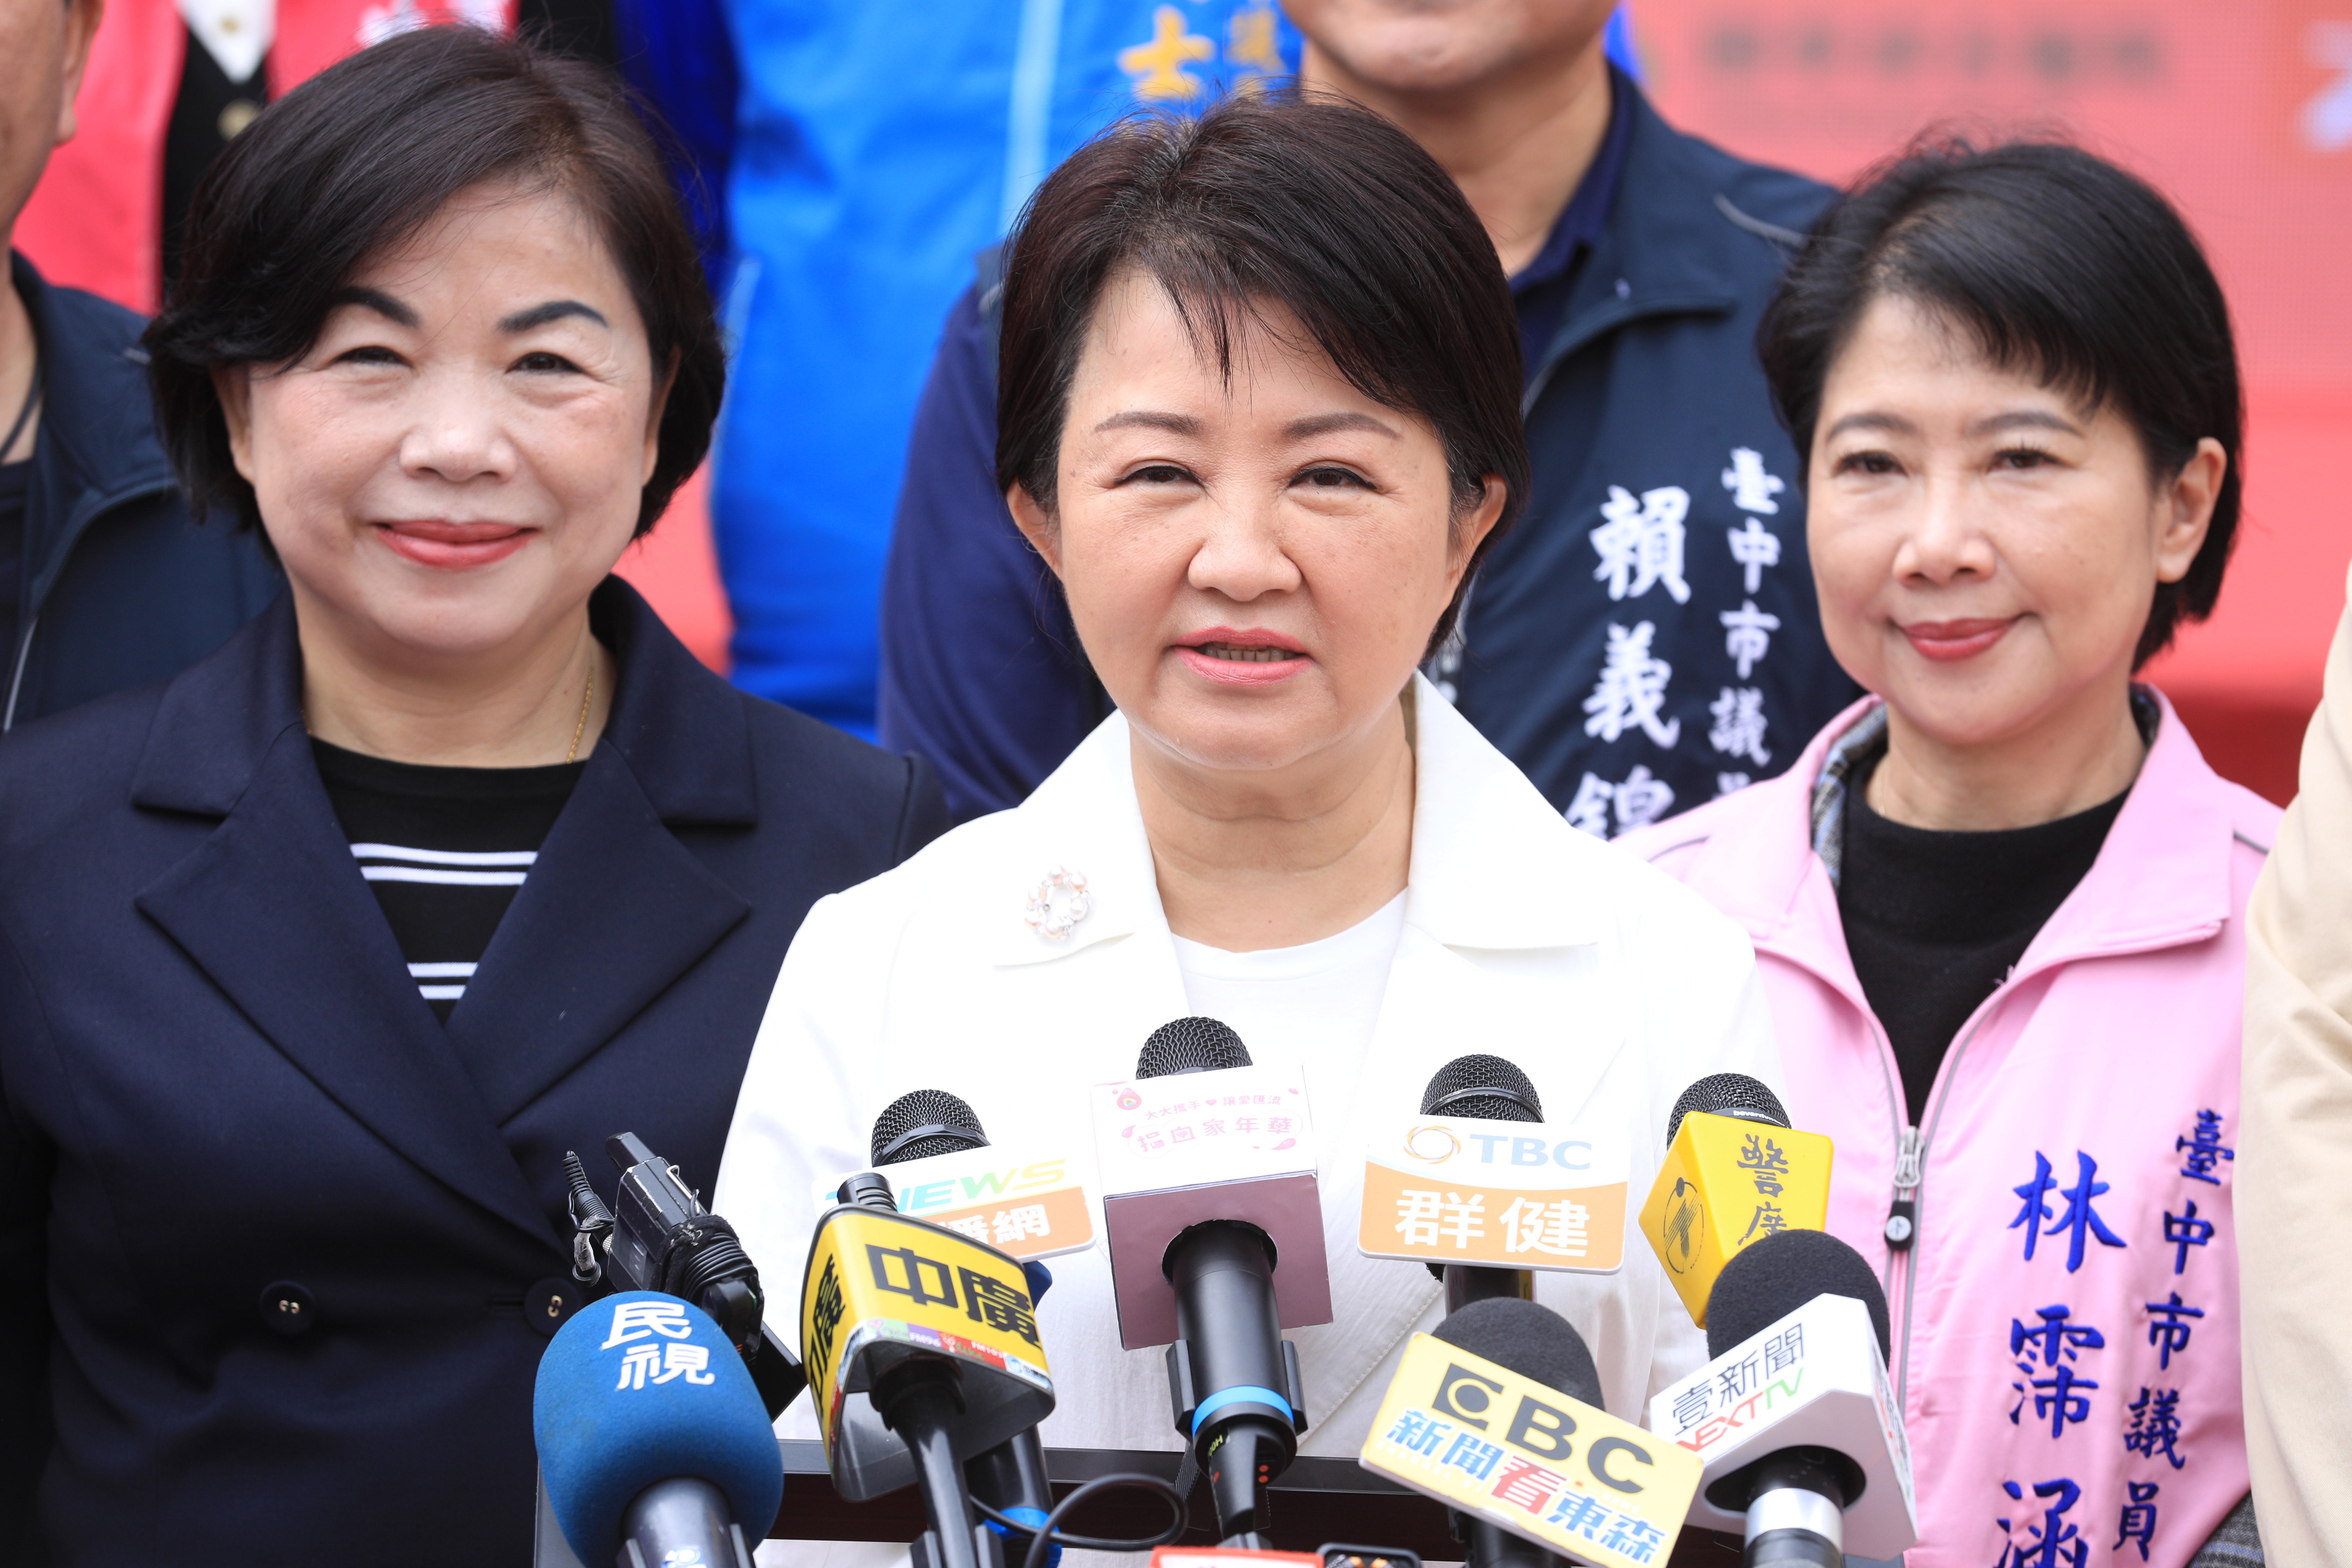 台中市长卢秀燕下午将赴南投，参与女性治理平台活动。她说，平台平时就有联系、发挥功用，至于是否扩及全国，会再思考一下。记者刘柏均／摄影